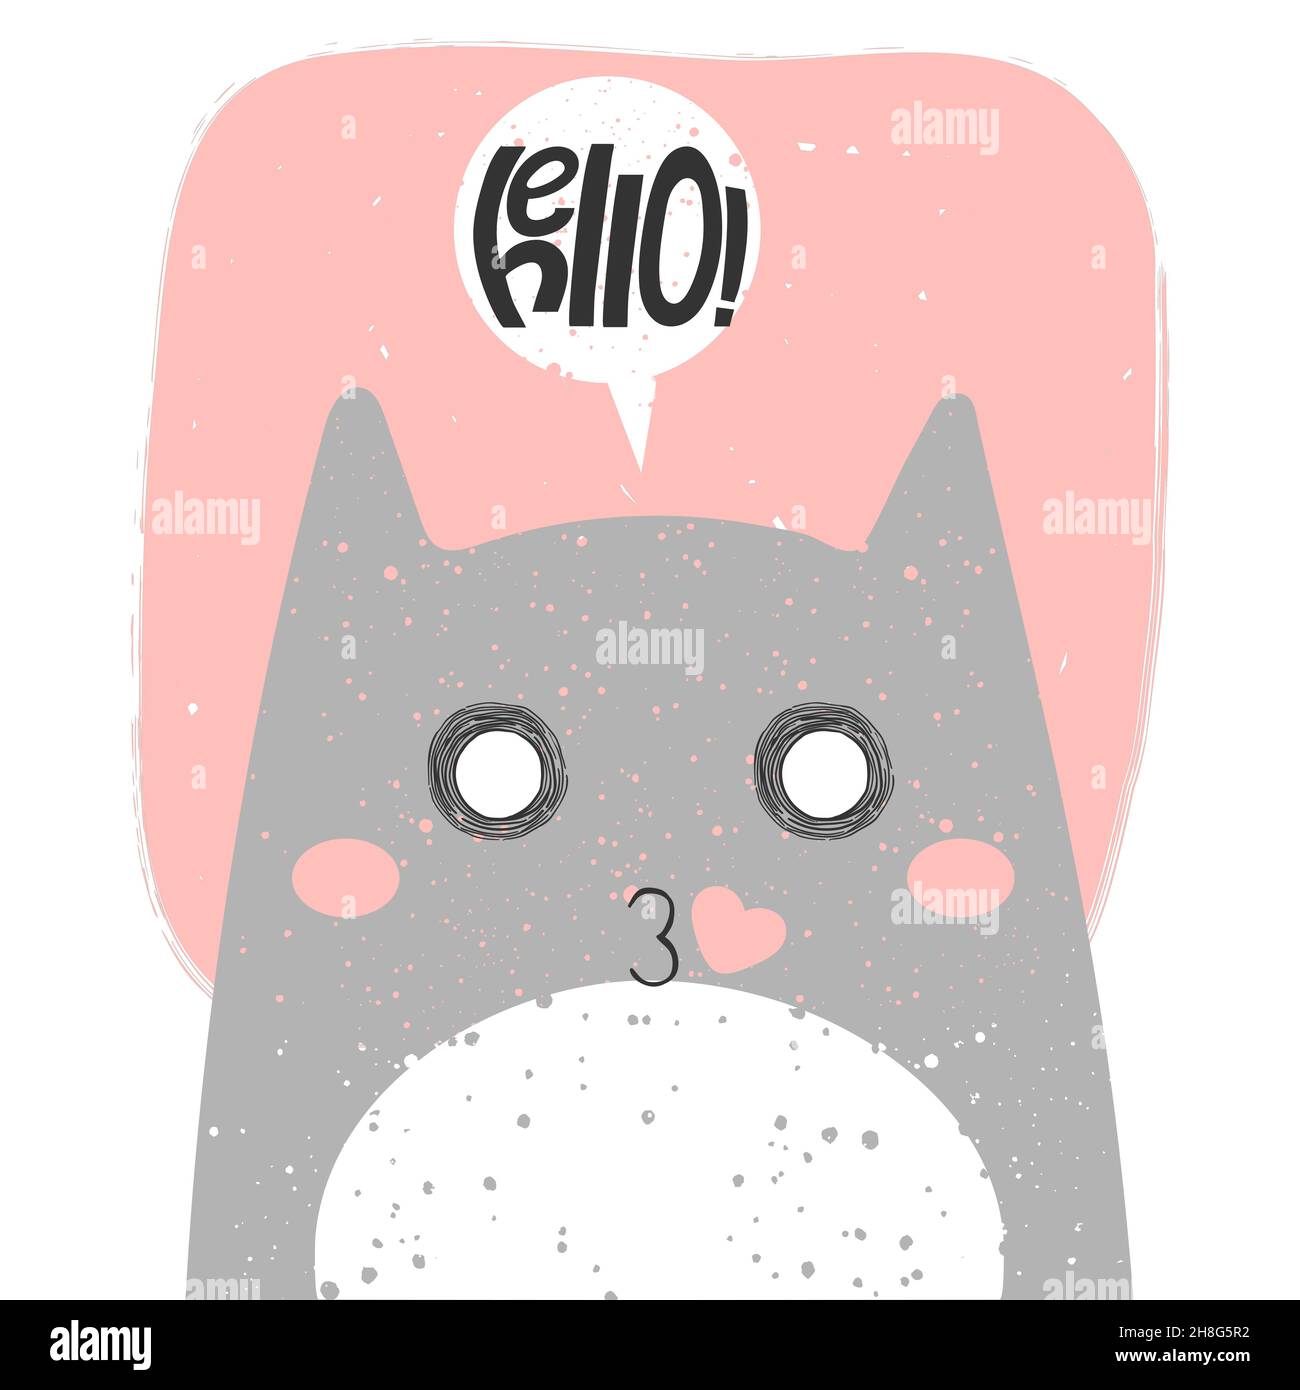 Niedliche Katze küssen mit Anime Emotion und Rede schwatzen sagen Hallo. Handgezeichnete Vektor-Illustration von Kitty in flachen Cartoon-Design. Niedlicher Kinderclip Stock Vektor